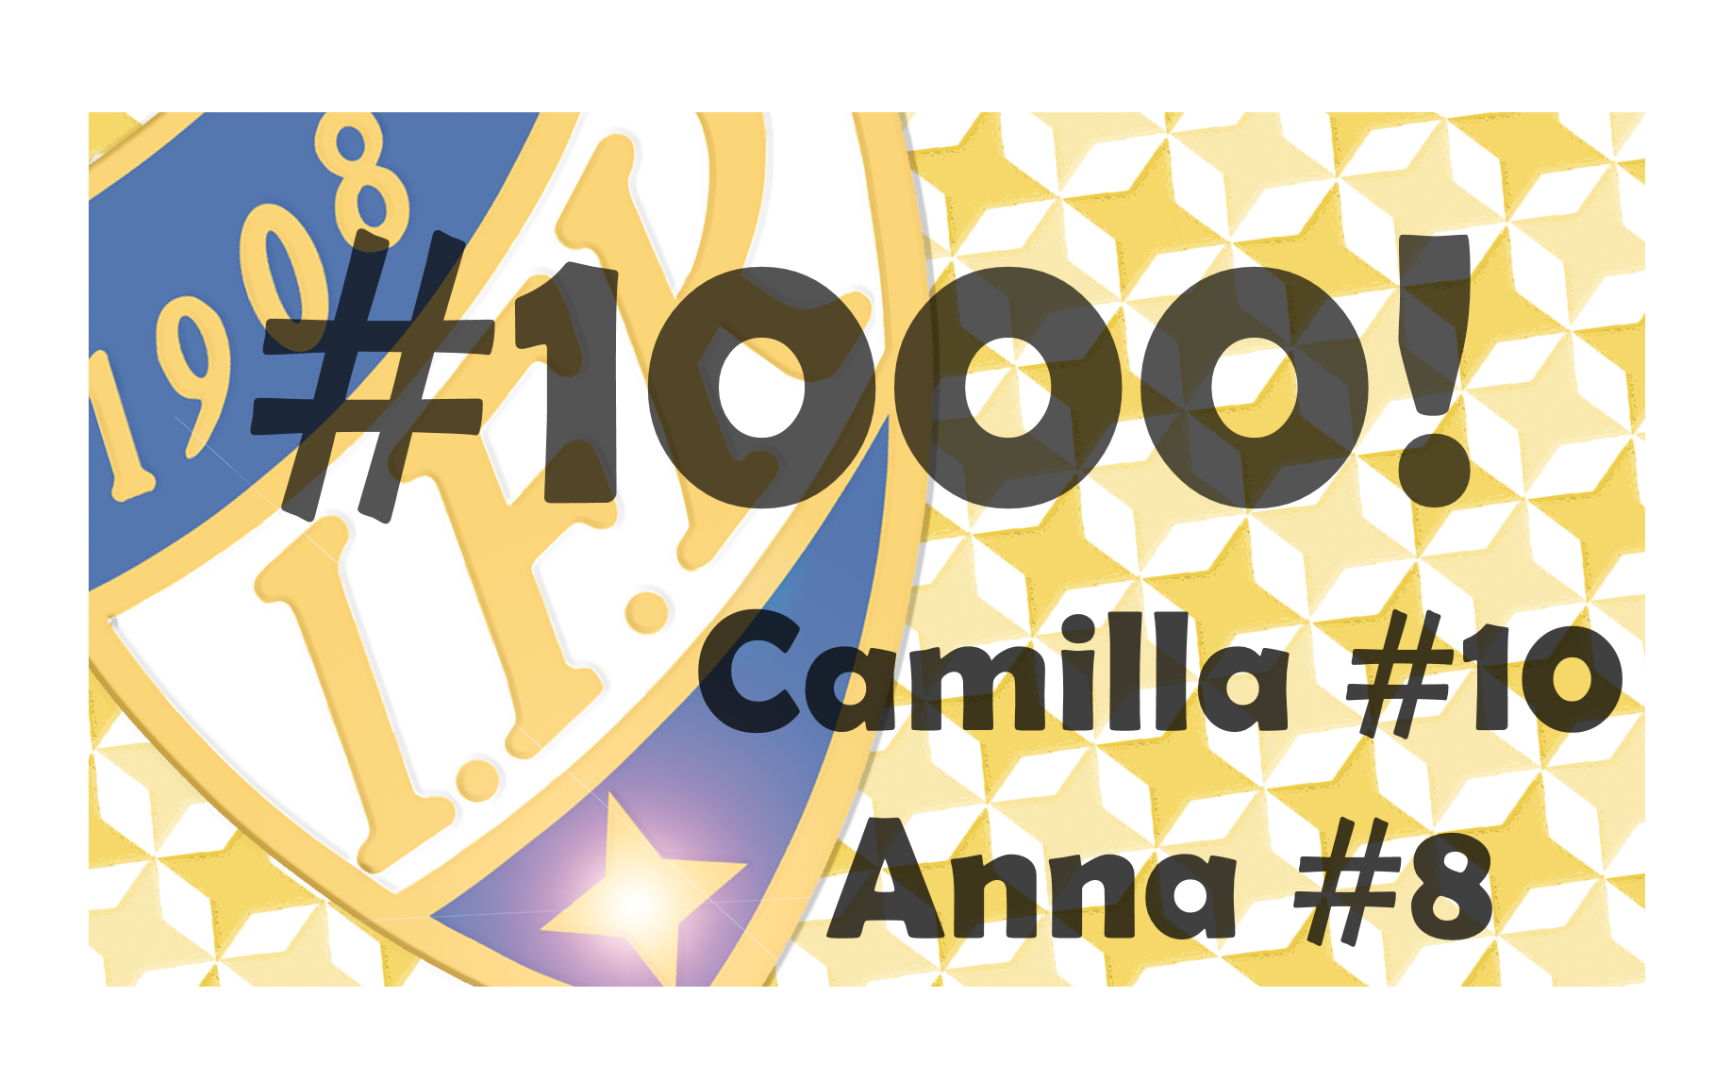 Våra ikoner: Camilla #10 och Anna #8